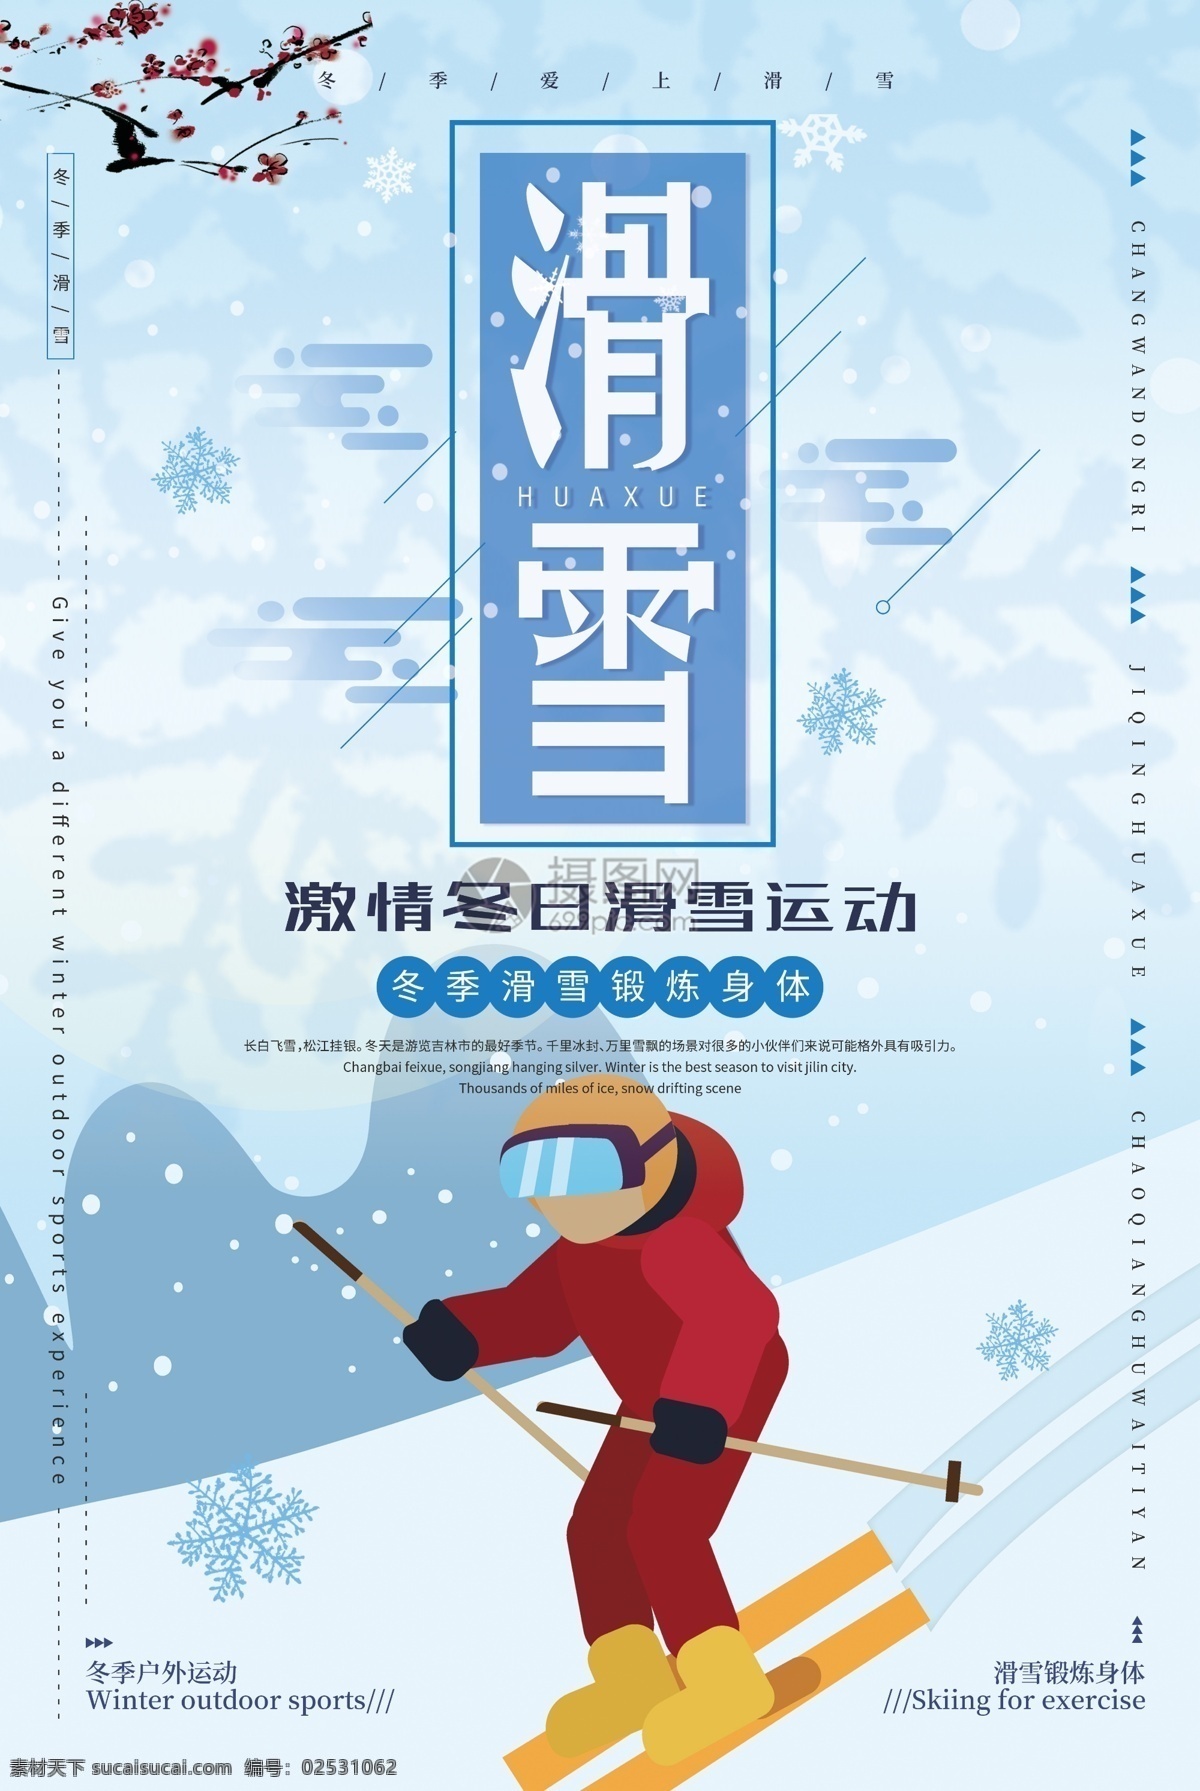 清新 冬季 滑雪 运动 海报 滑雪运动 户外 活动 锻炼 锻炼身体 滑雪海报设计 户外滑雪海报 冬季滑雪运动